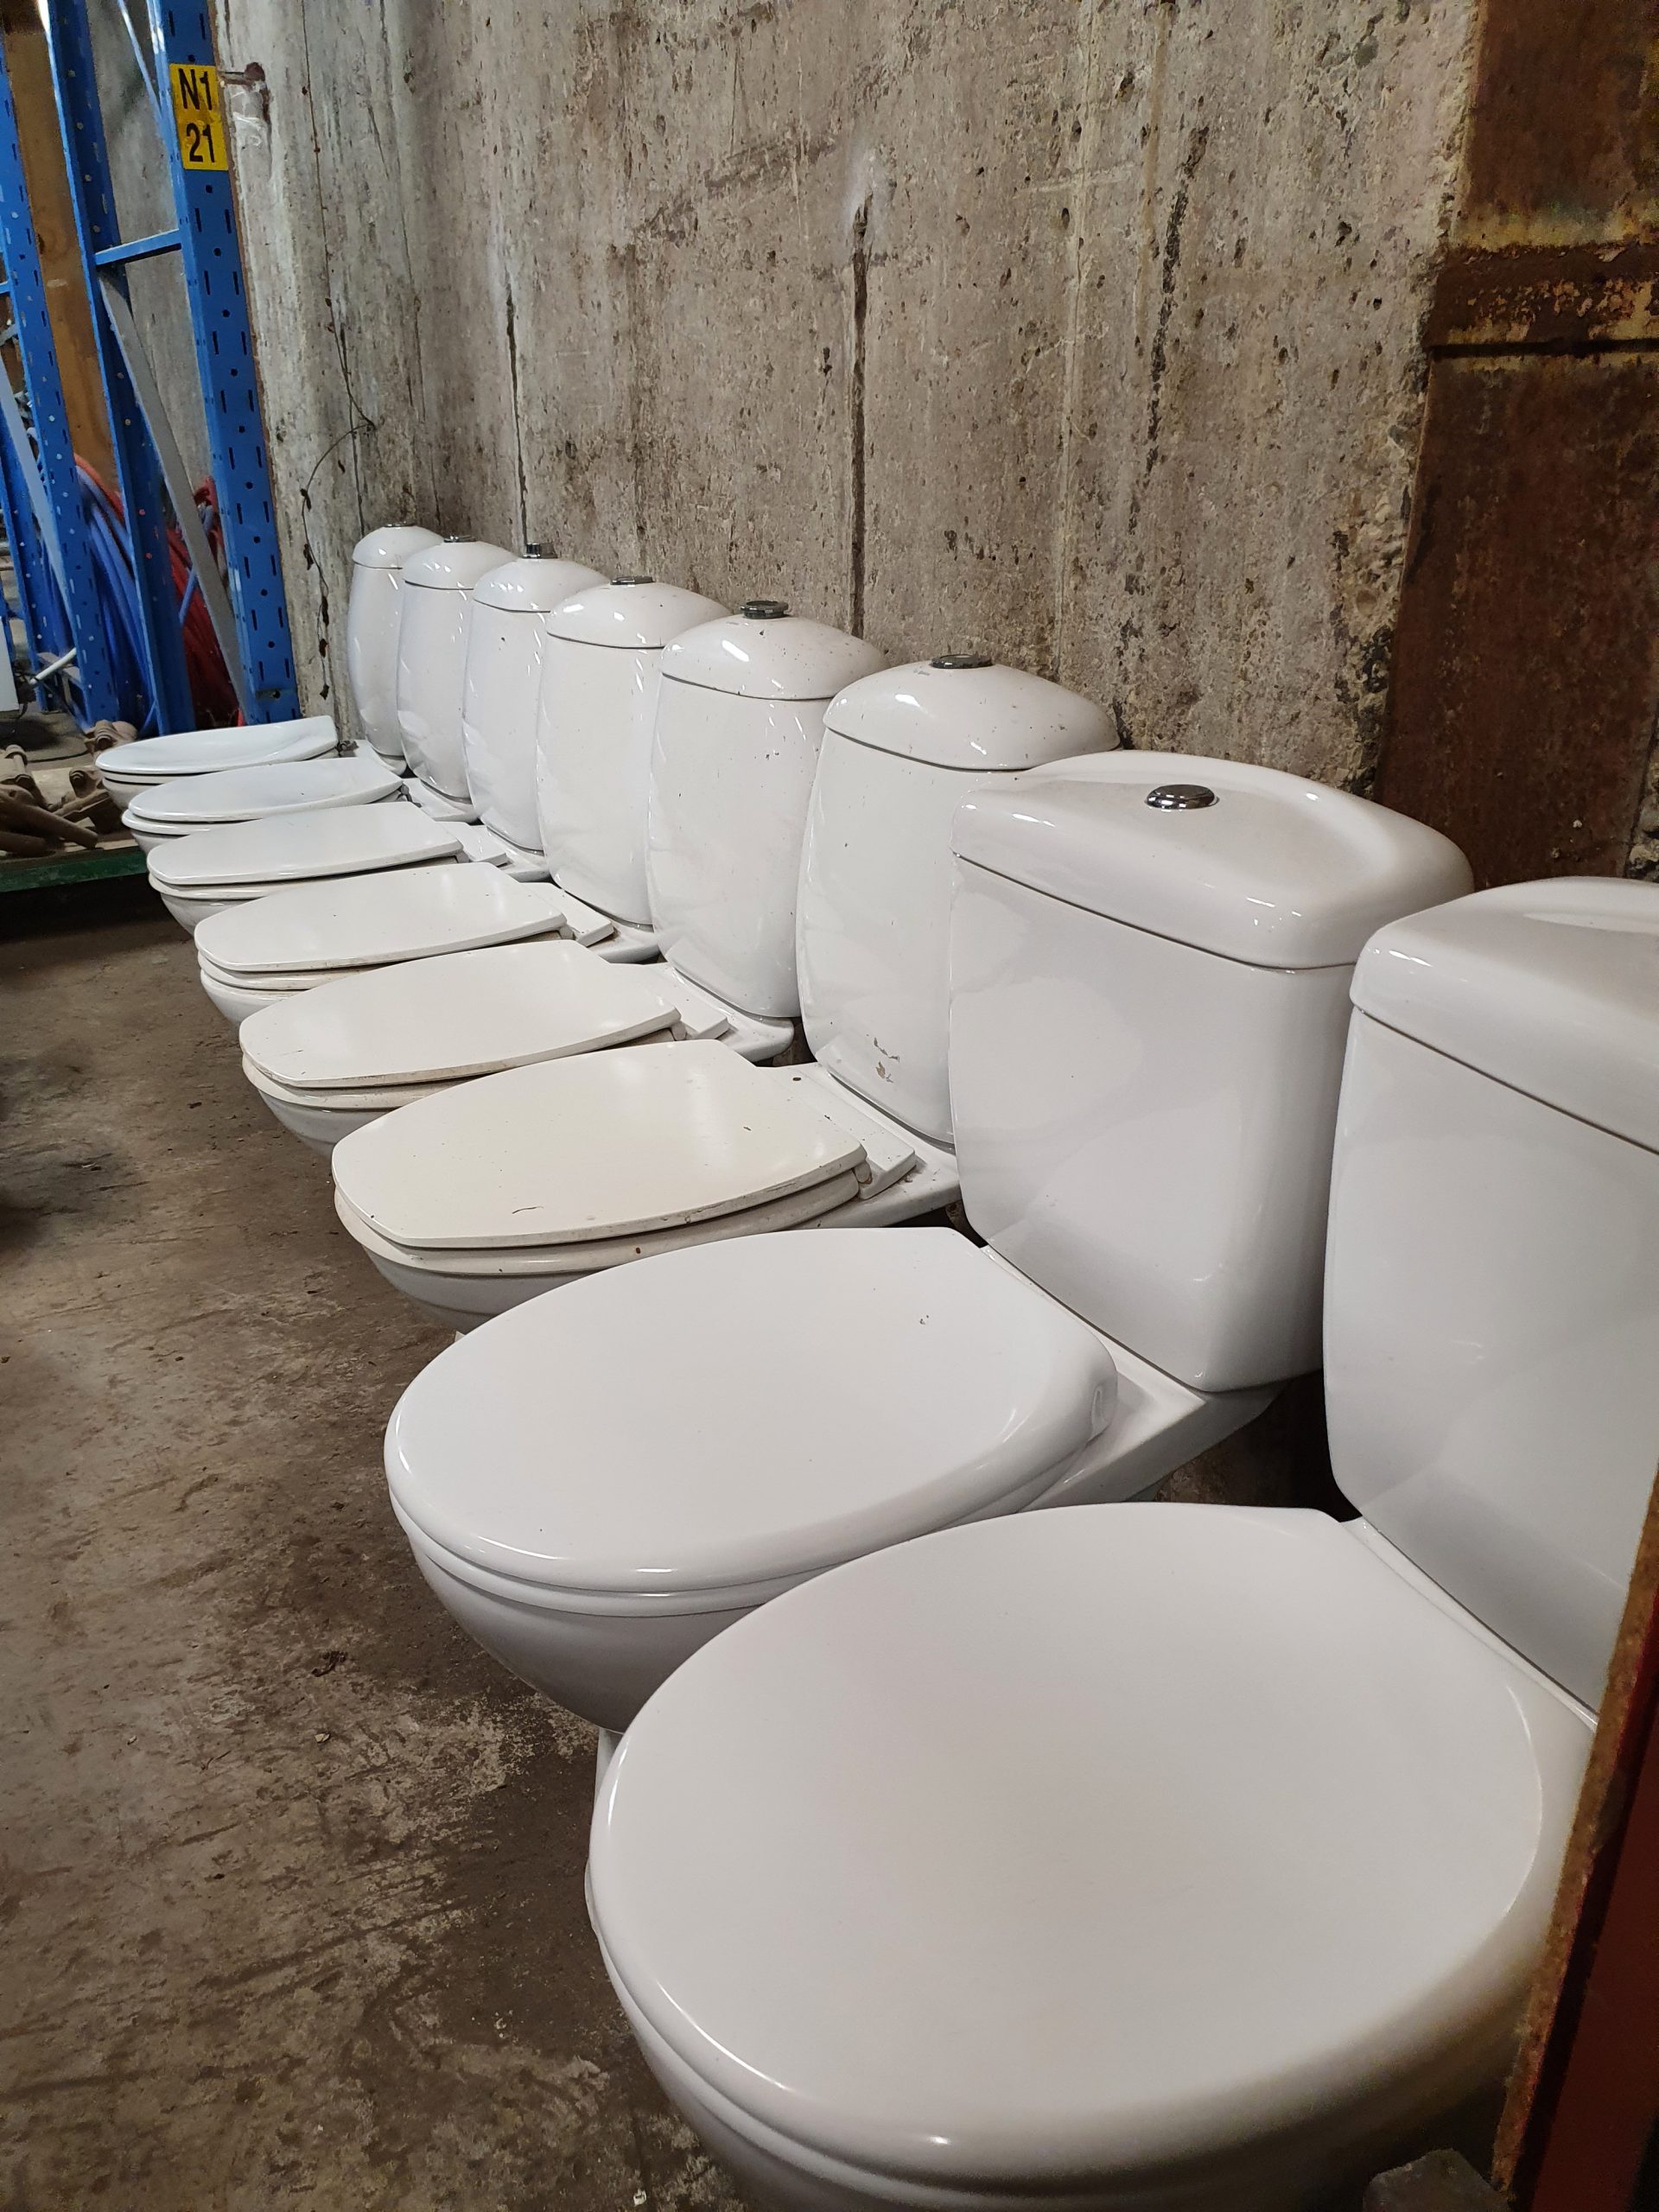 Tweedehands toiletten | potten - Tweedehandsmaterialen